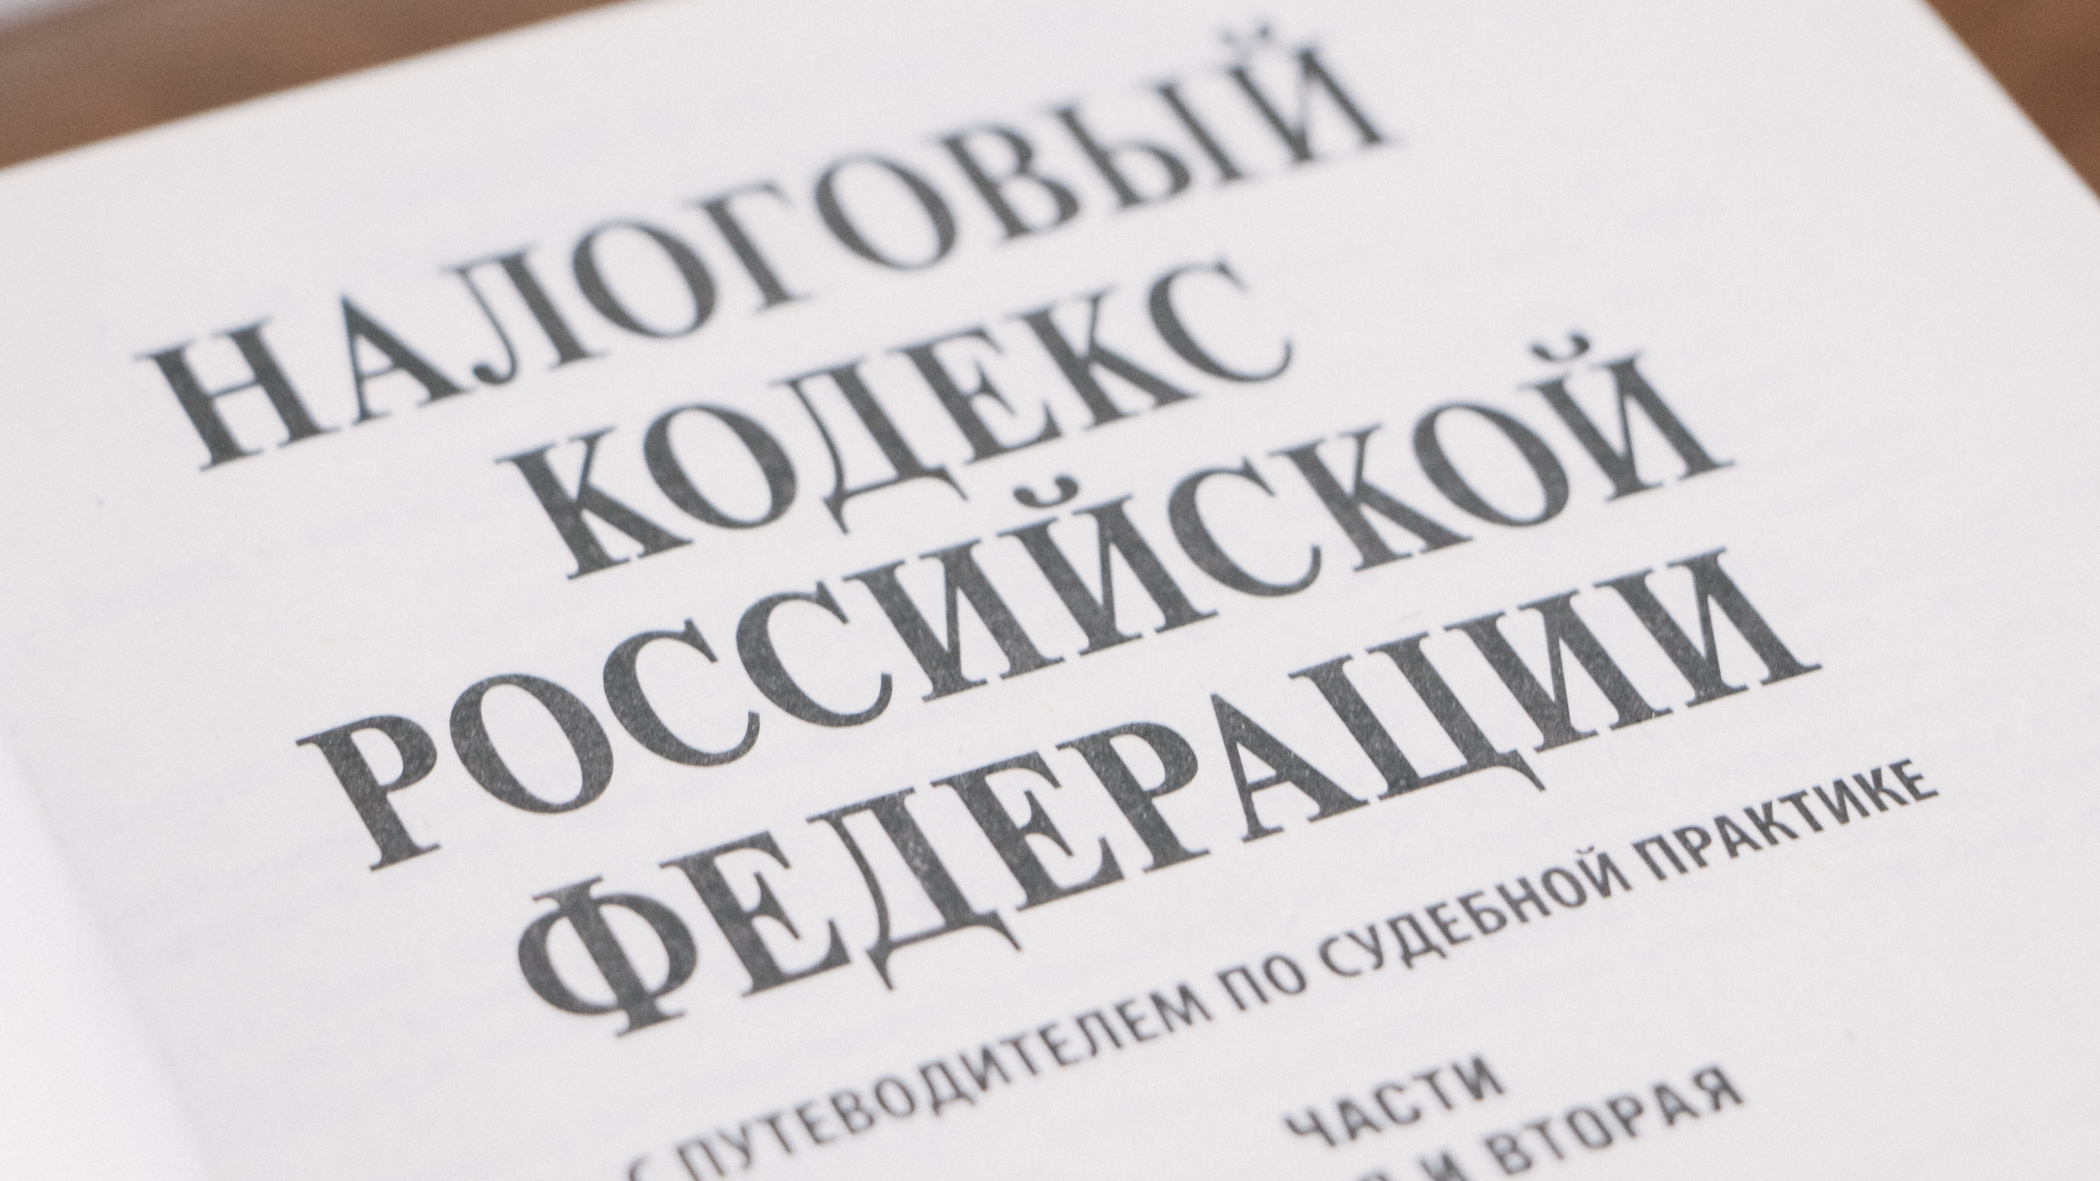 Югорского бизнесмена осудят за сокрытие налогов на 4 млн рублей